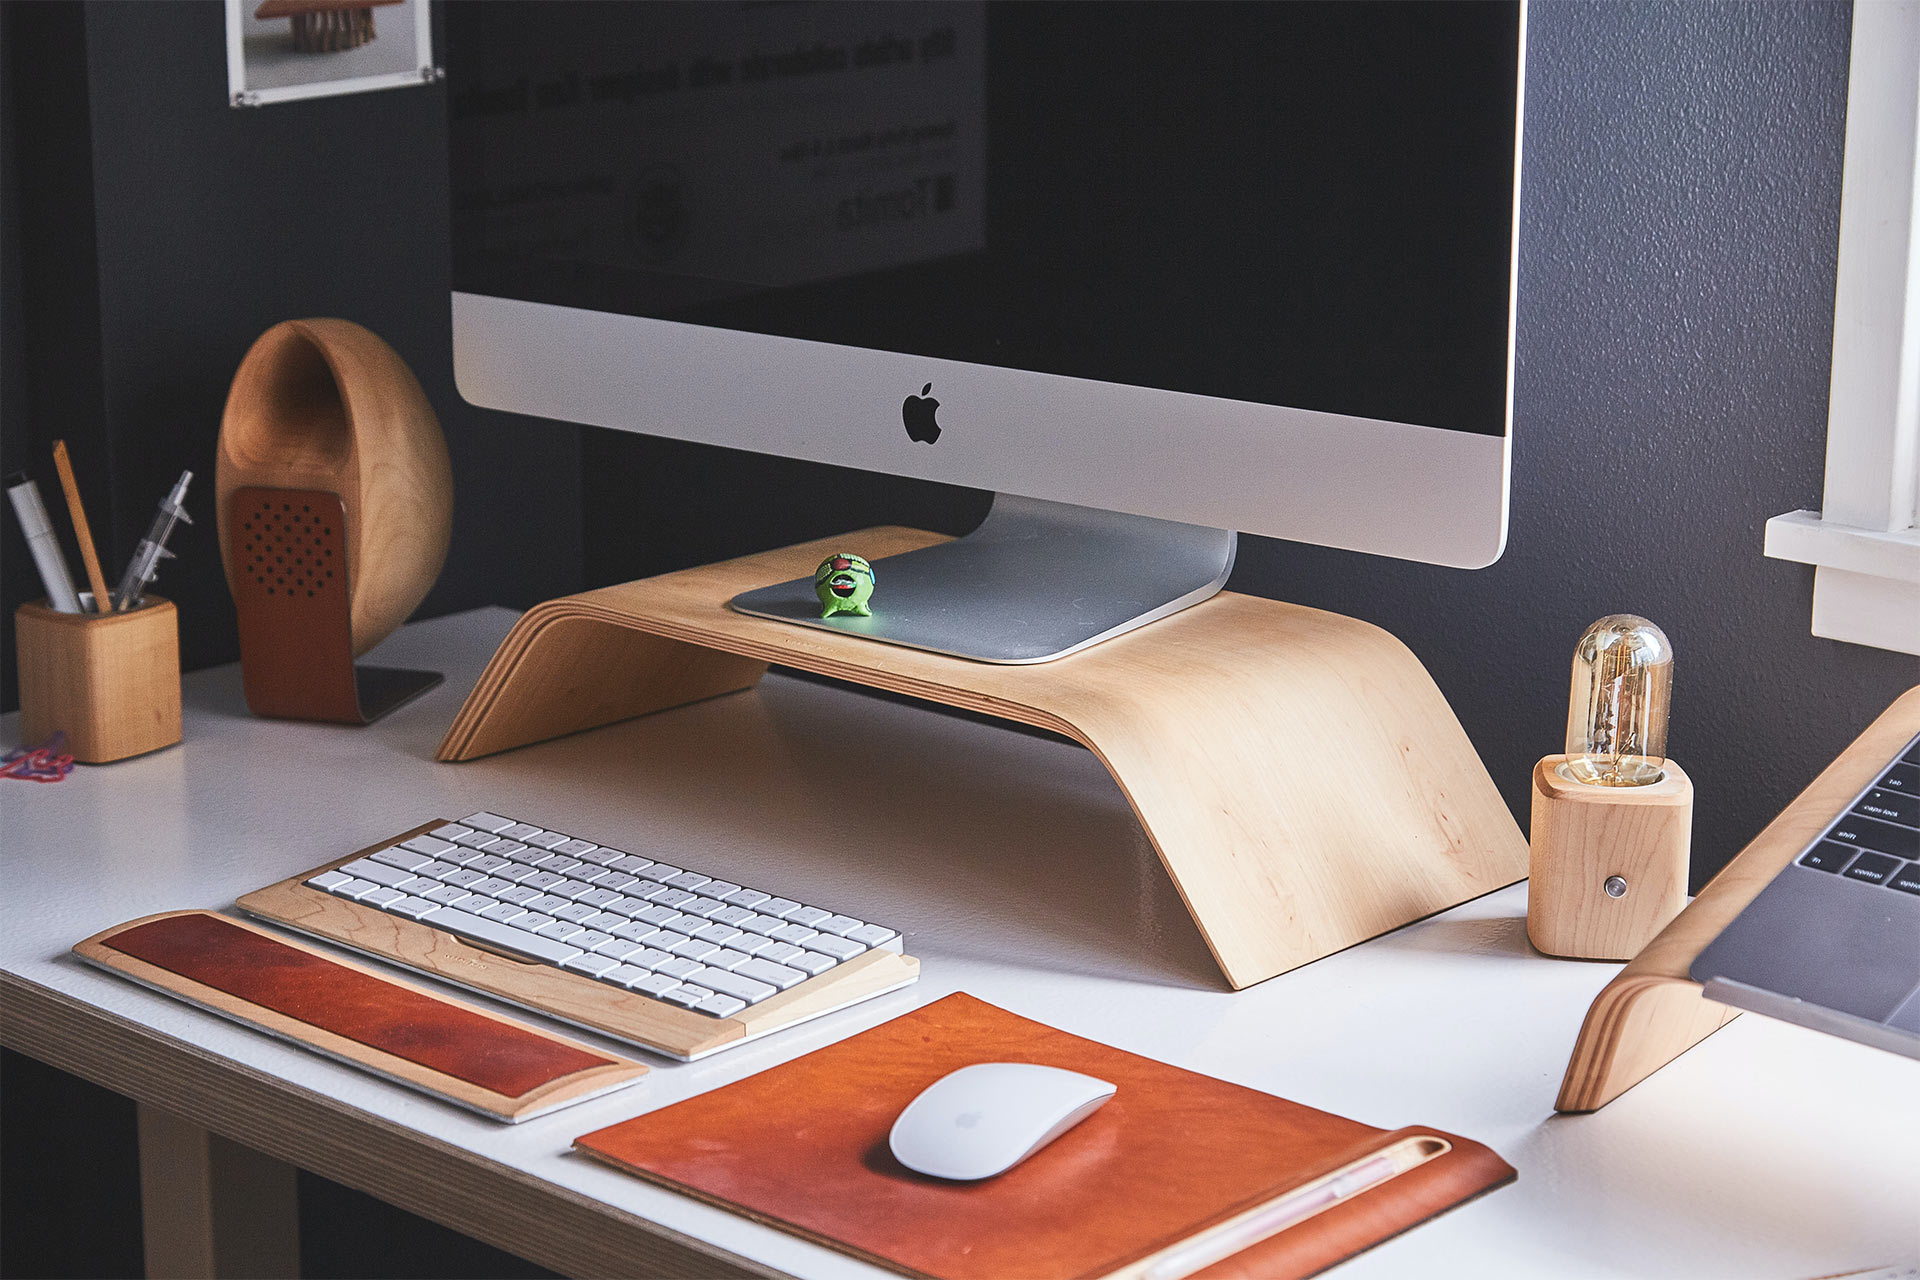 На столе расположены iMac на деревянной подставке, беспроводная клавиатура и мышь.